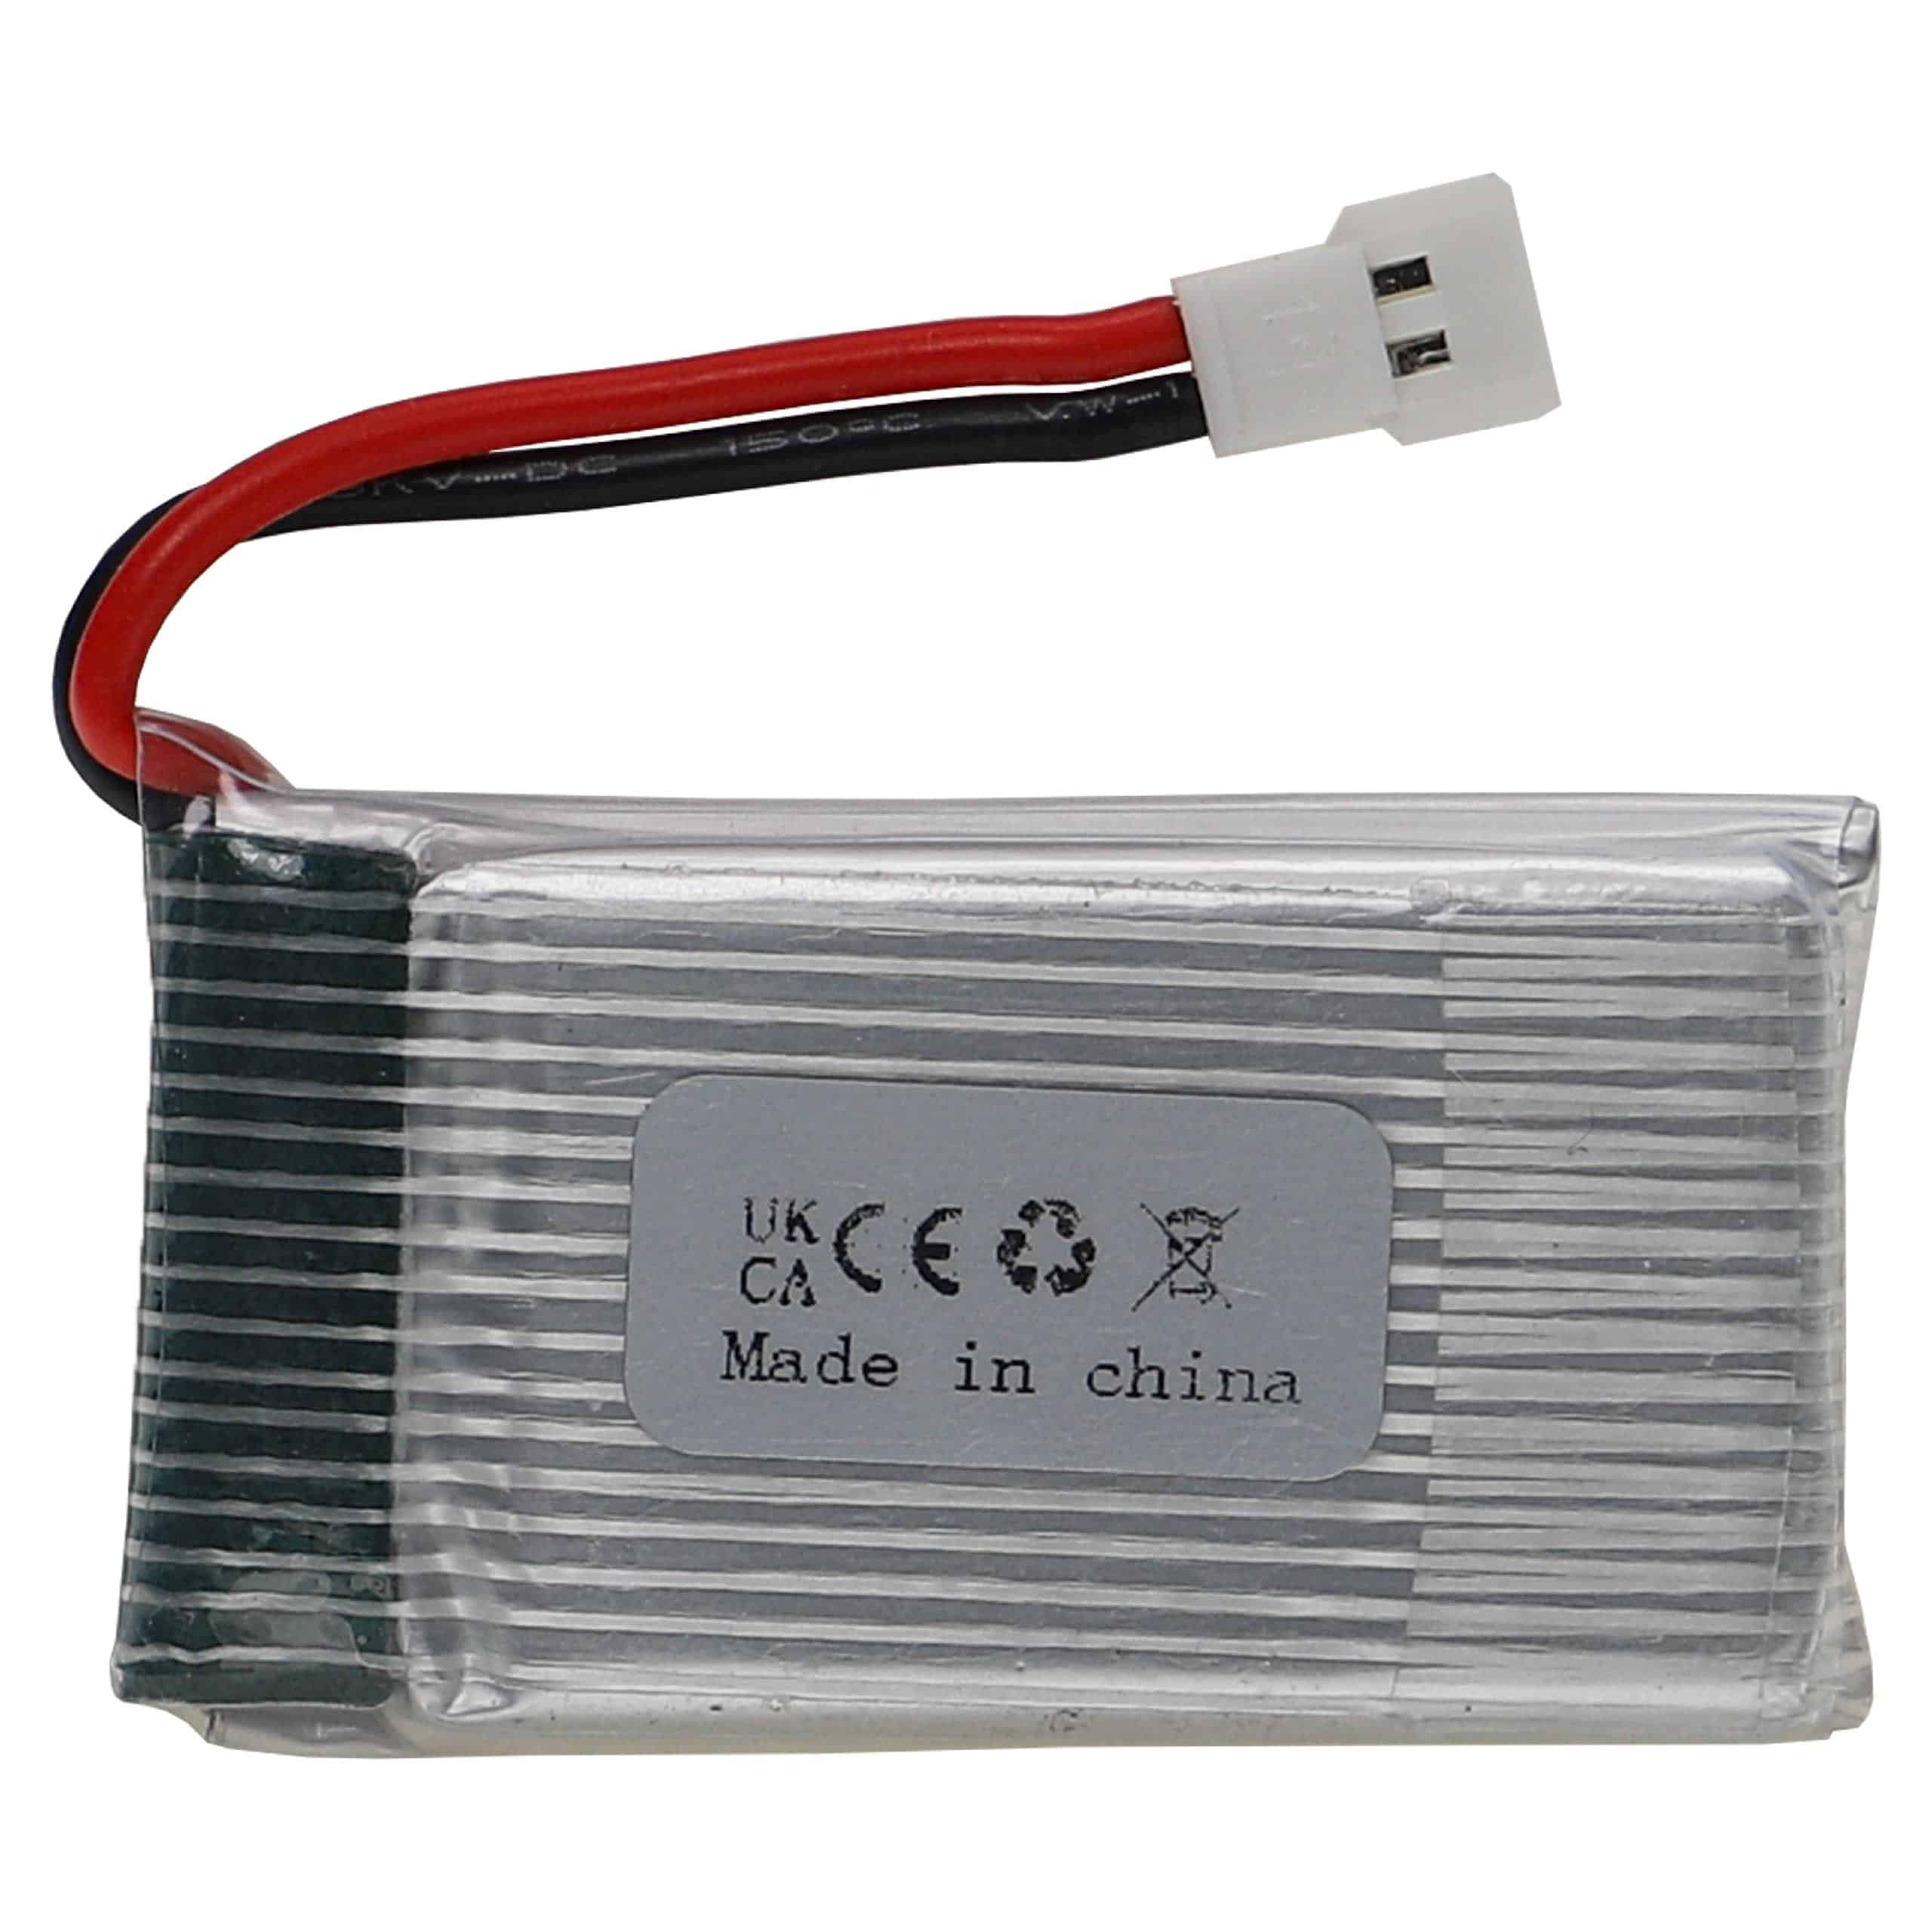 Akumulator do modeli zdalnie sterowanych RC - 720 mAh 3,7 V LiPo, XH 2.54 2P